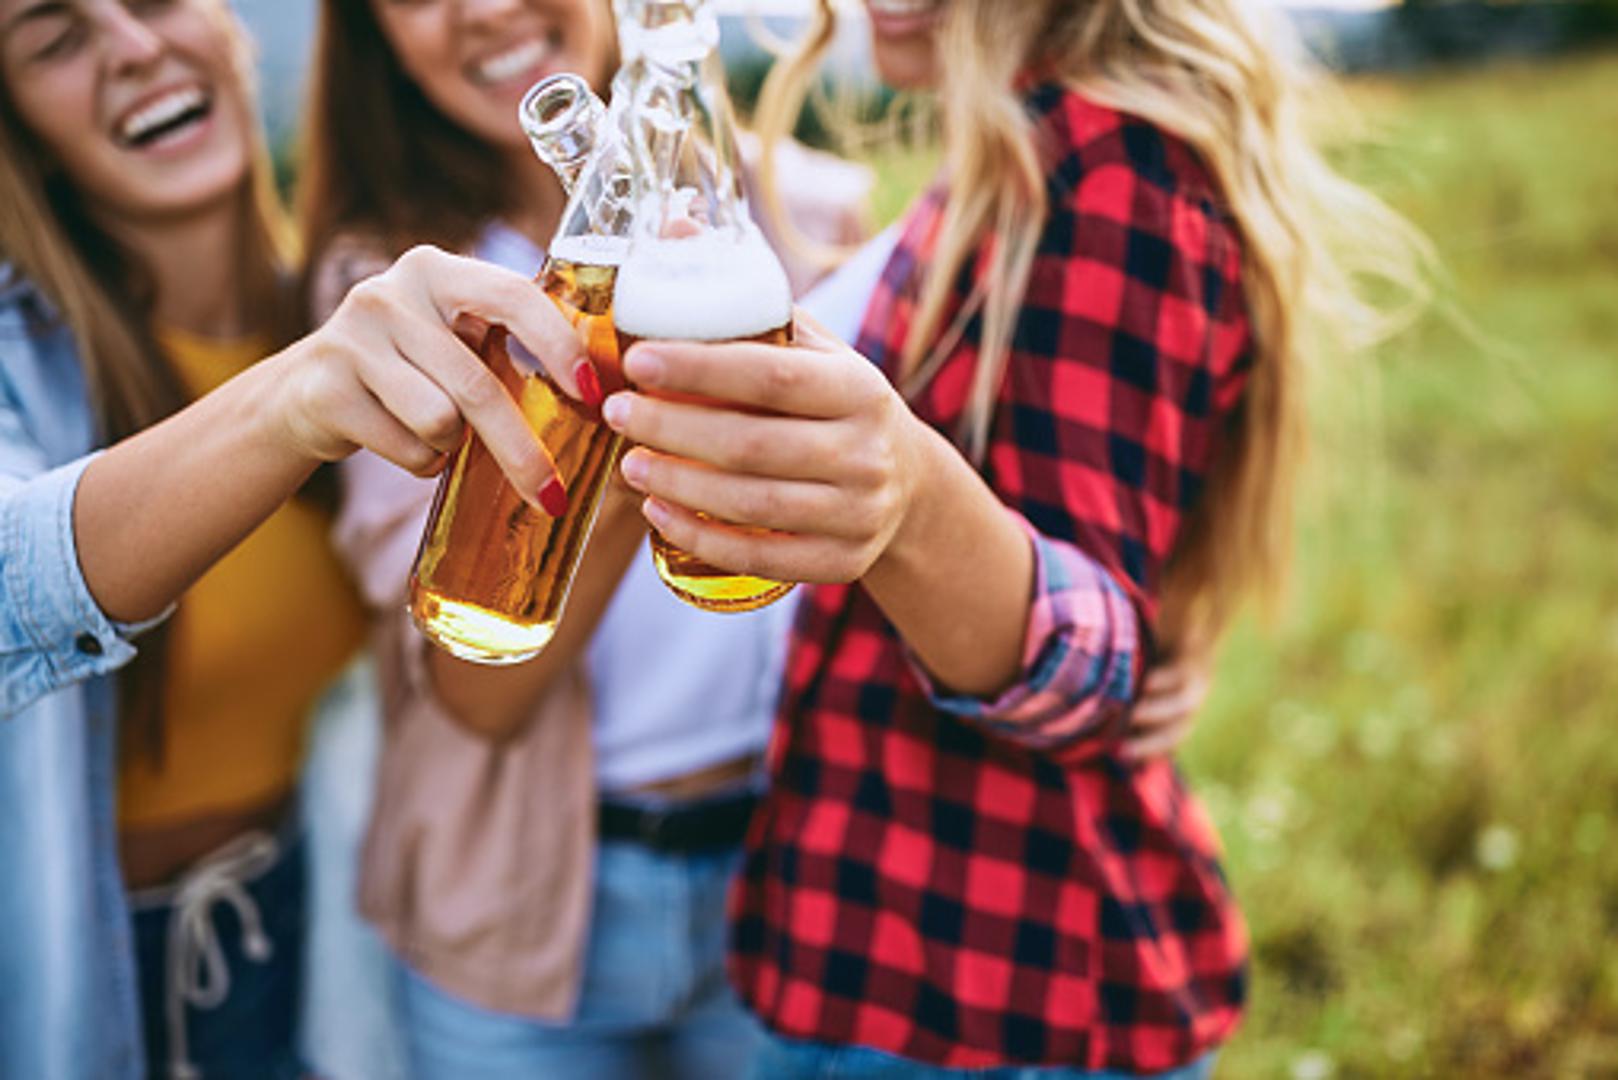 Ako ste pravi ljubitelj piva, ljeto neće biti jedino vrijeme u godini kada ćete posezati za tim pićem. No, upravo ono što gotovo svi radimo, sasvim je krivo, tvrde stručnjaci za pivo.